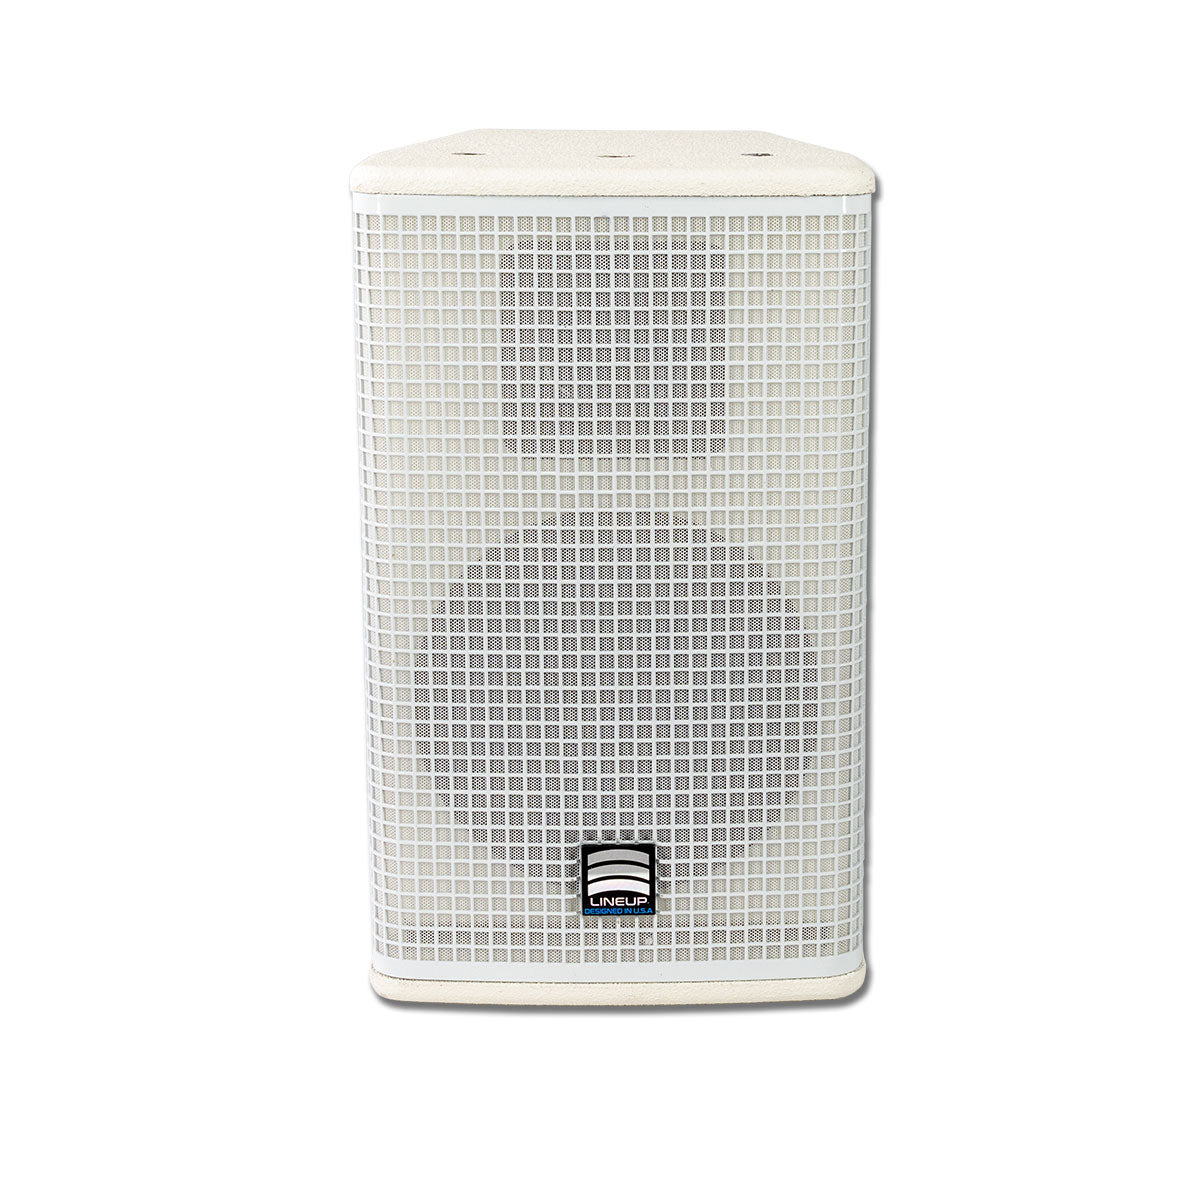 Passive Full range 6" Speaker - White GA601-W